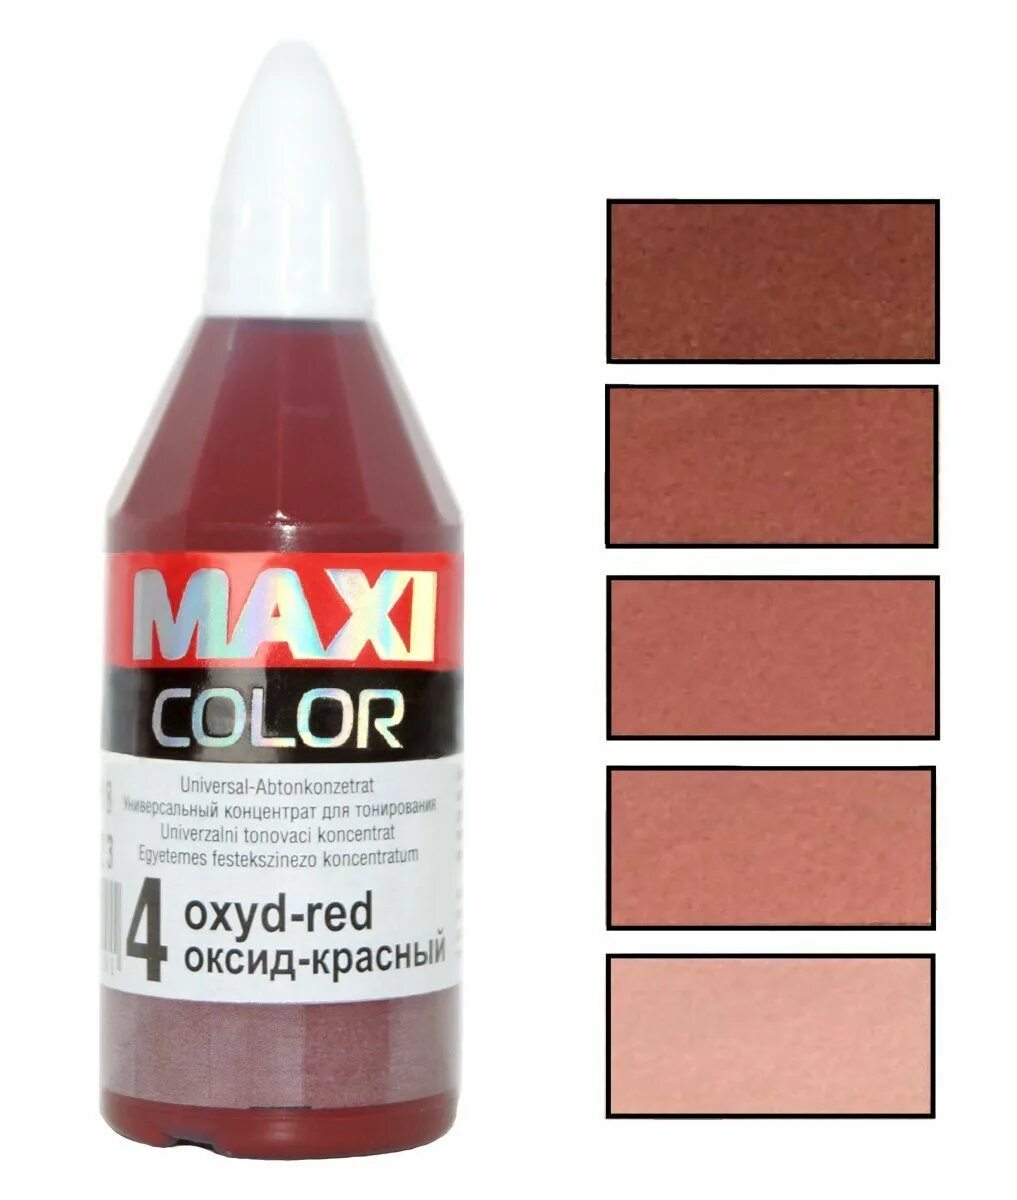 Maxi-Color 40 мл концентрат (колер). Колер Maxi-Color, универсальный концентрат для тонирования №18 Orange. Колер красный. Оксидно красный колер. Концентрат цвет